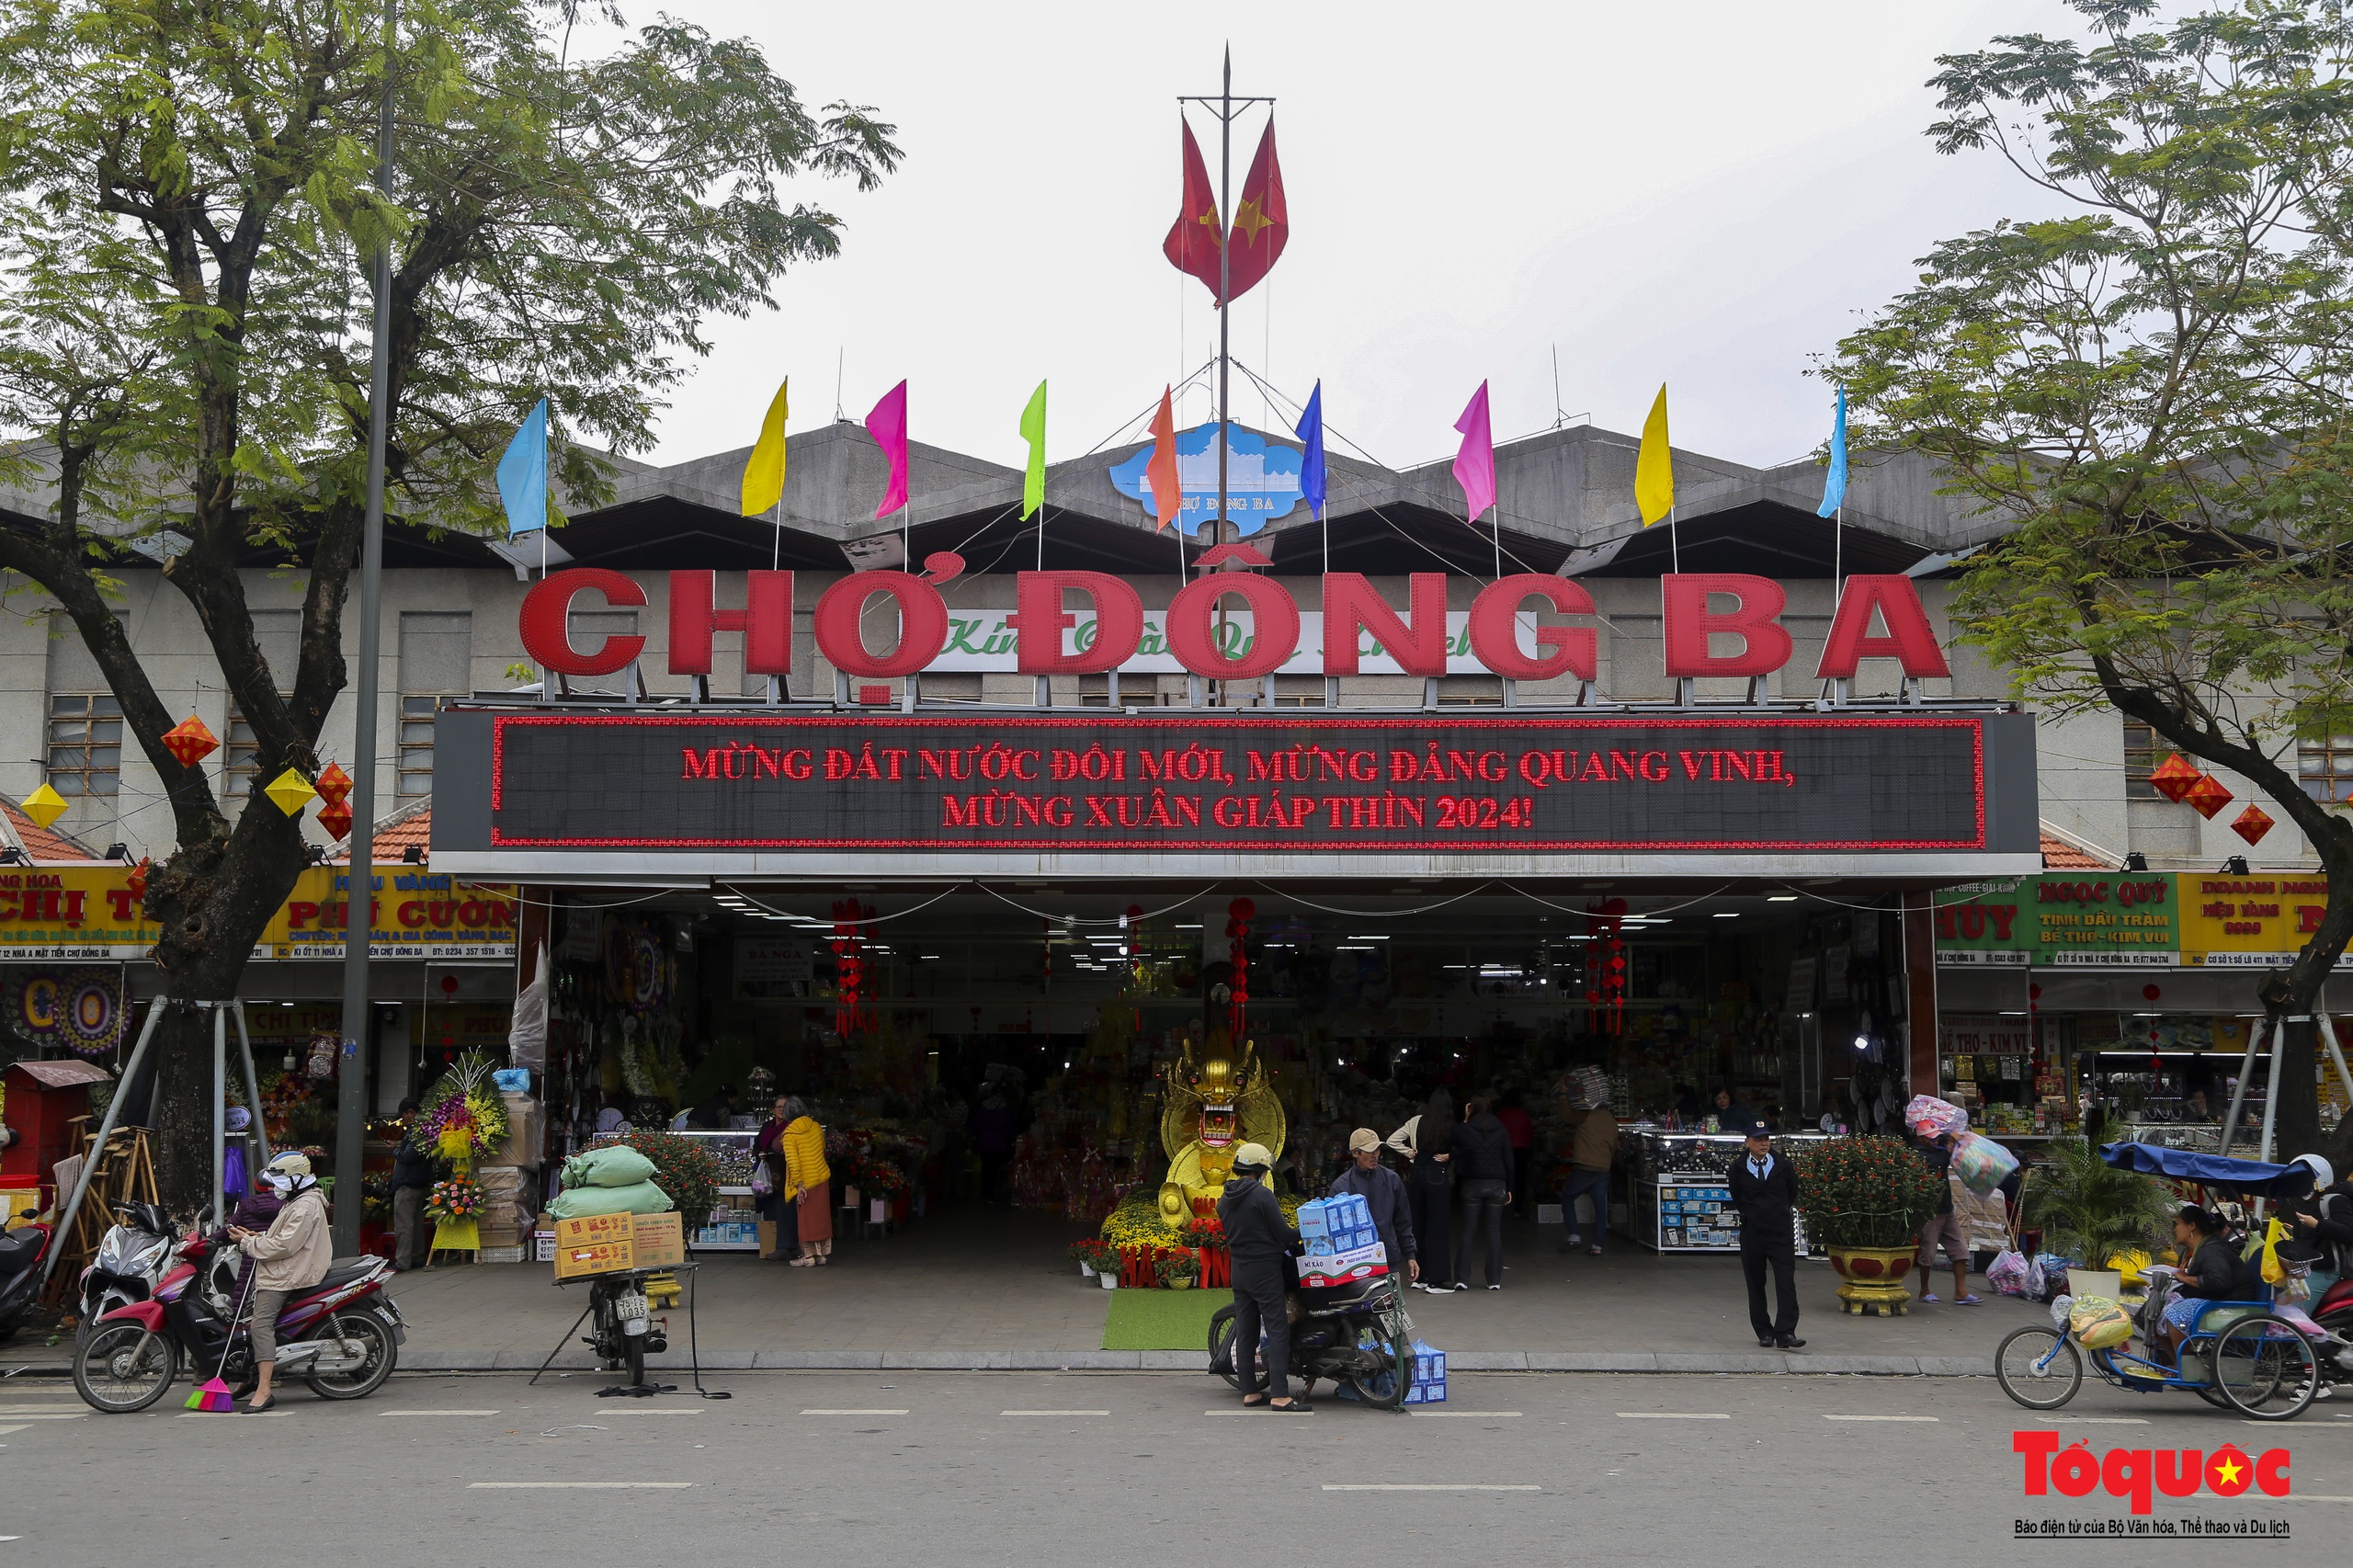 Hàng hóa Tết đa dạng, sức mua tại ngôi chợ nổi tiếng bậc nhất xứ Huế vẫn chưa cao - Ảnh 1.